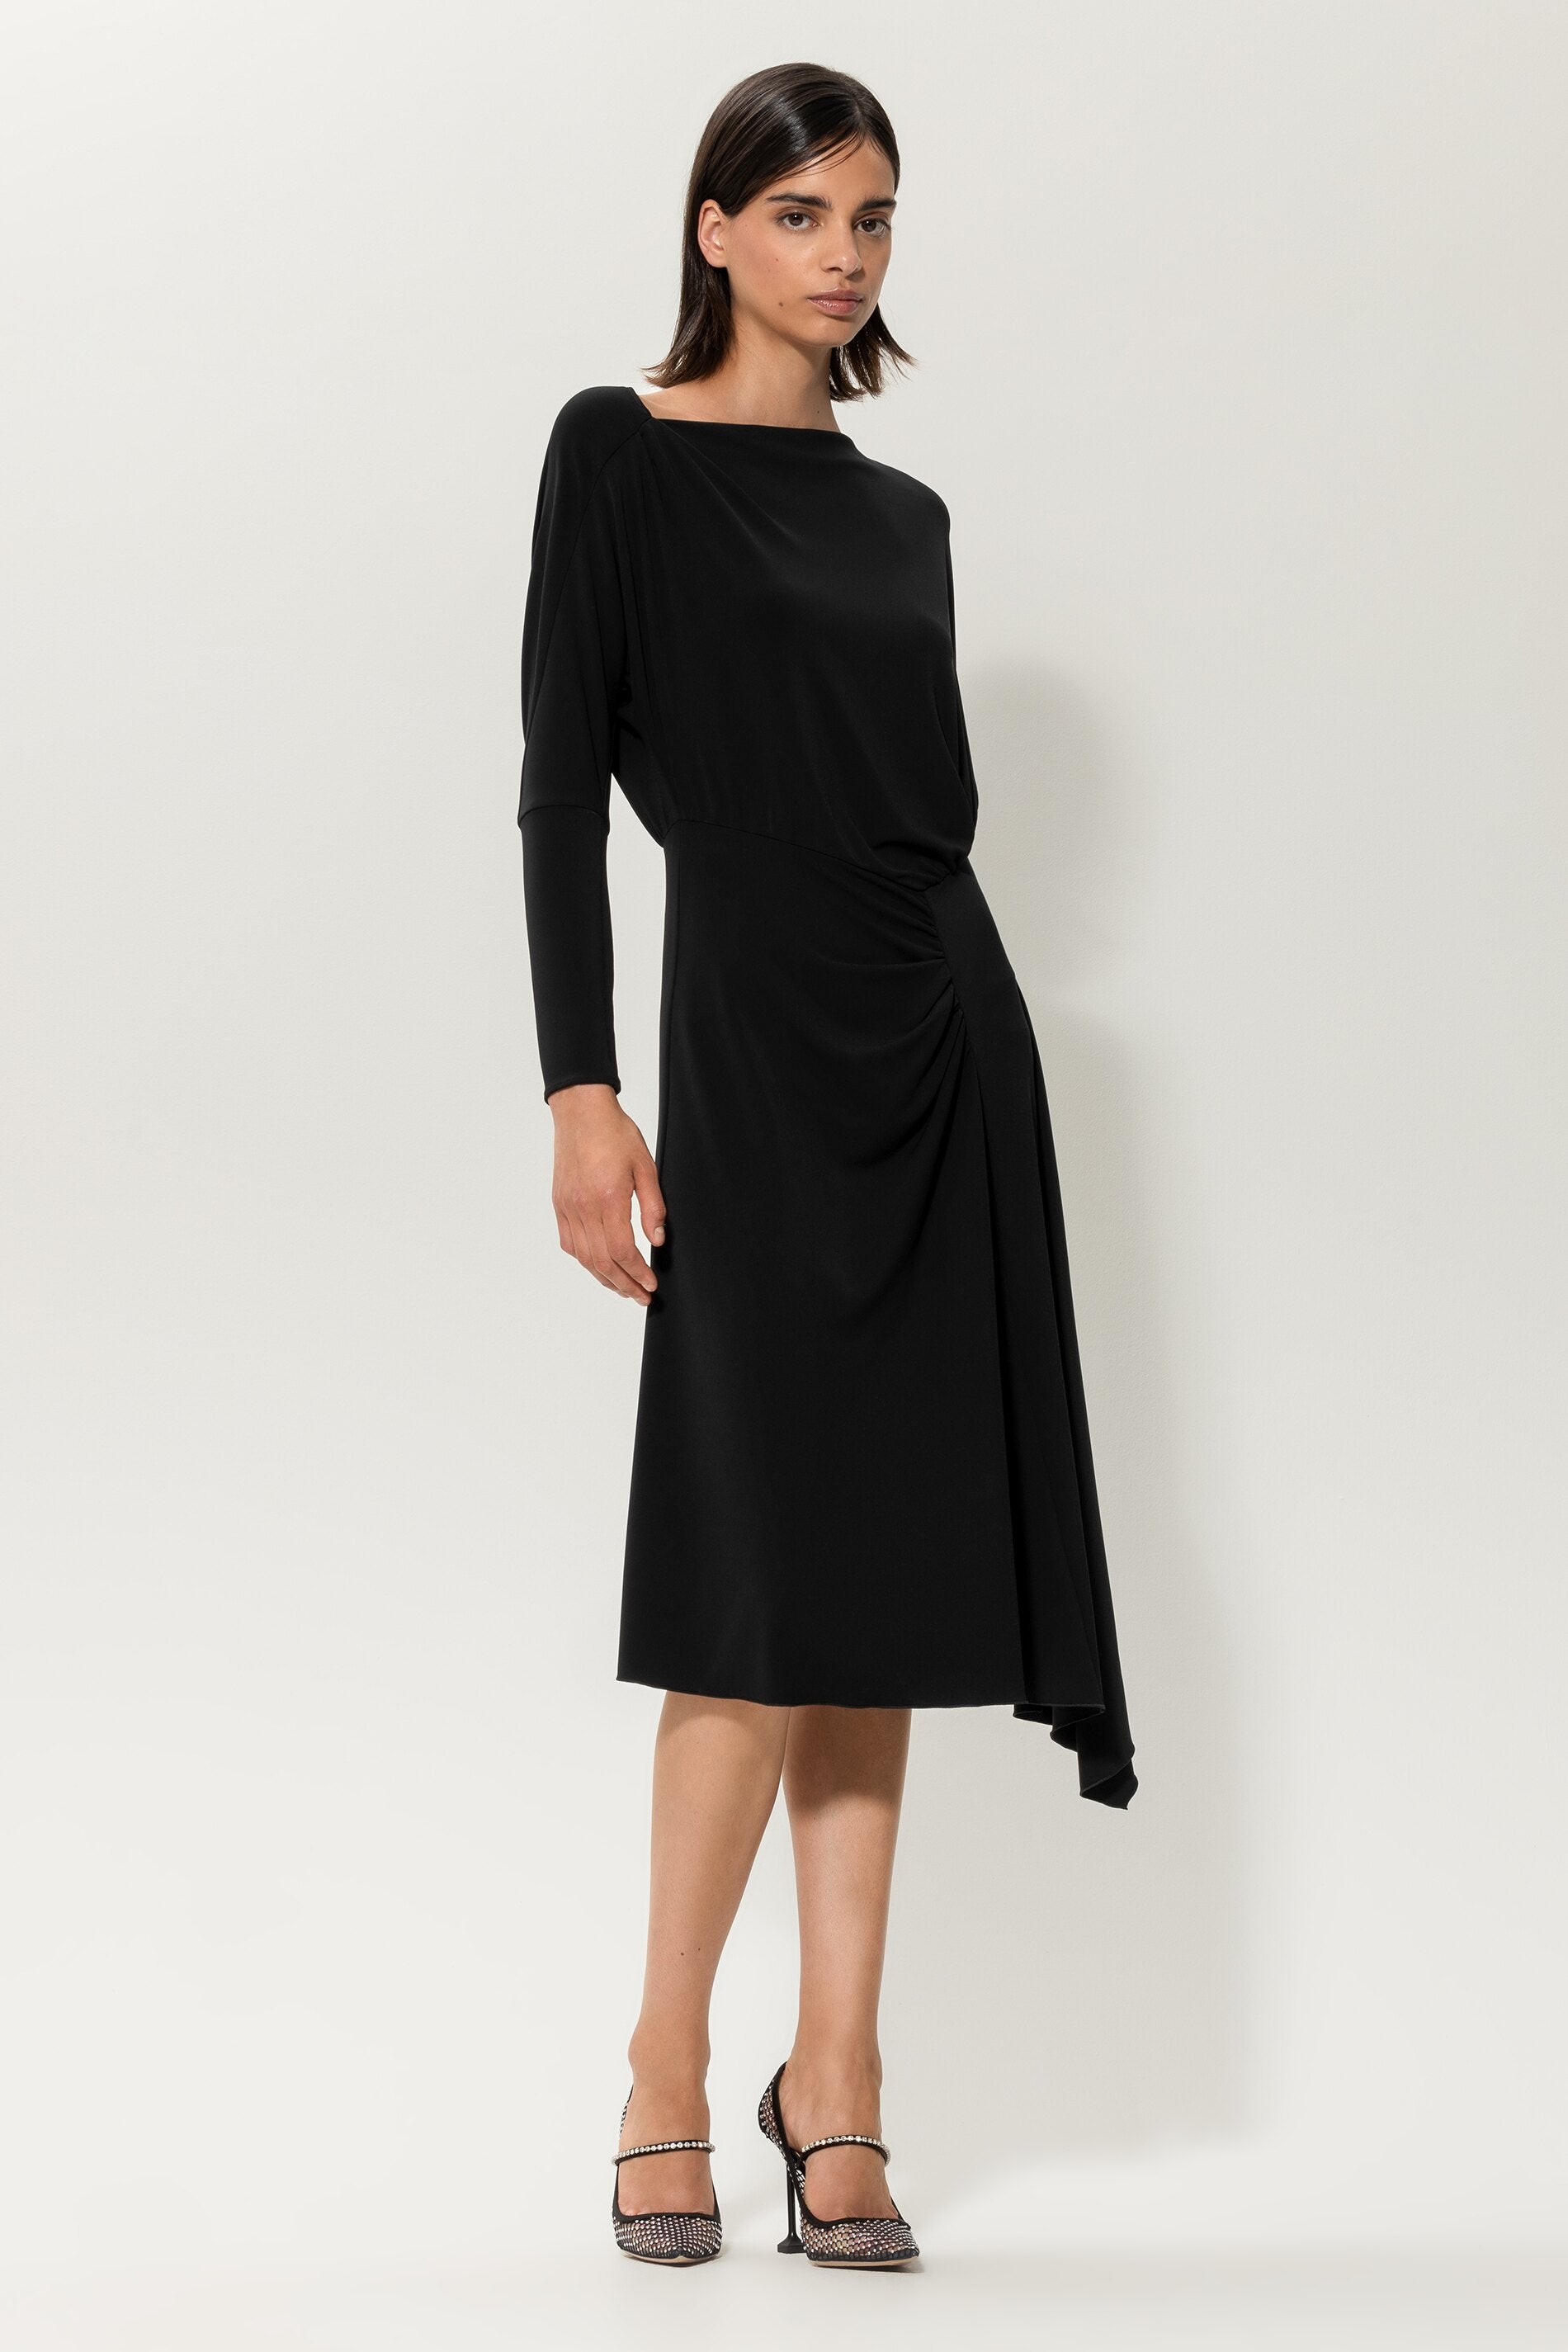 LUISA CERANO-OUTLET-SALE-Asymmetrisches Kleid-Kleider & Röcke-by-ARCHIVIST